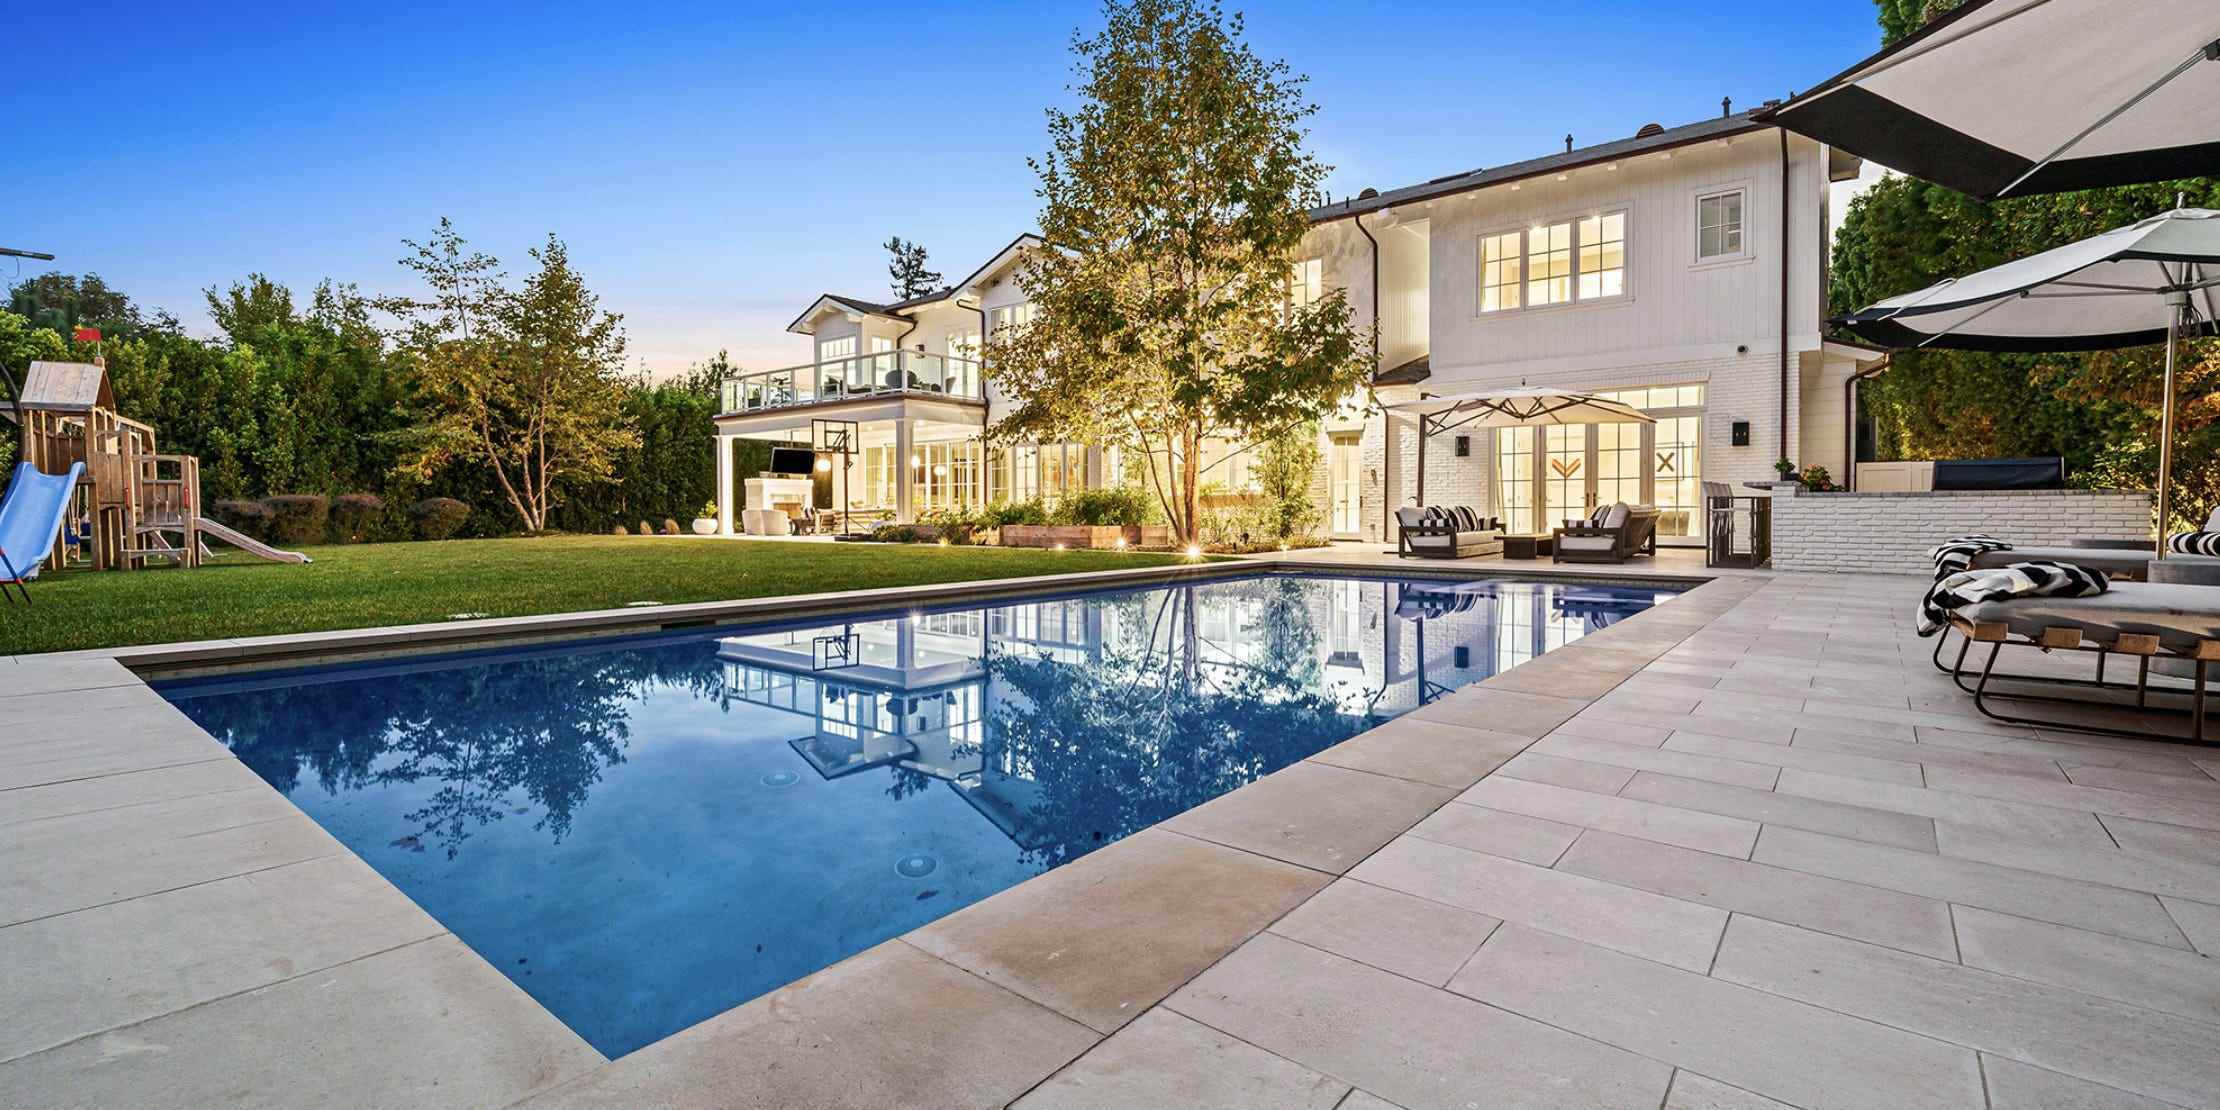 Blauer Pool im Hinterhof von Russell Westbrooks Villa in Los Angeles.